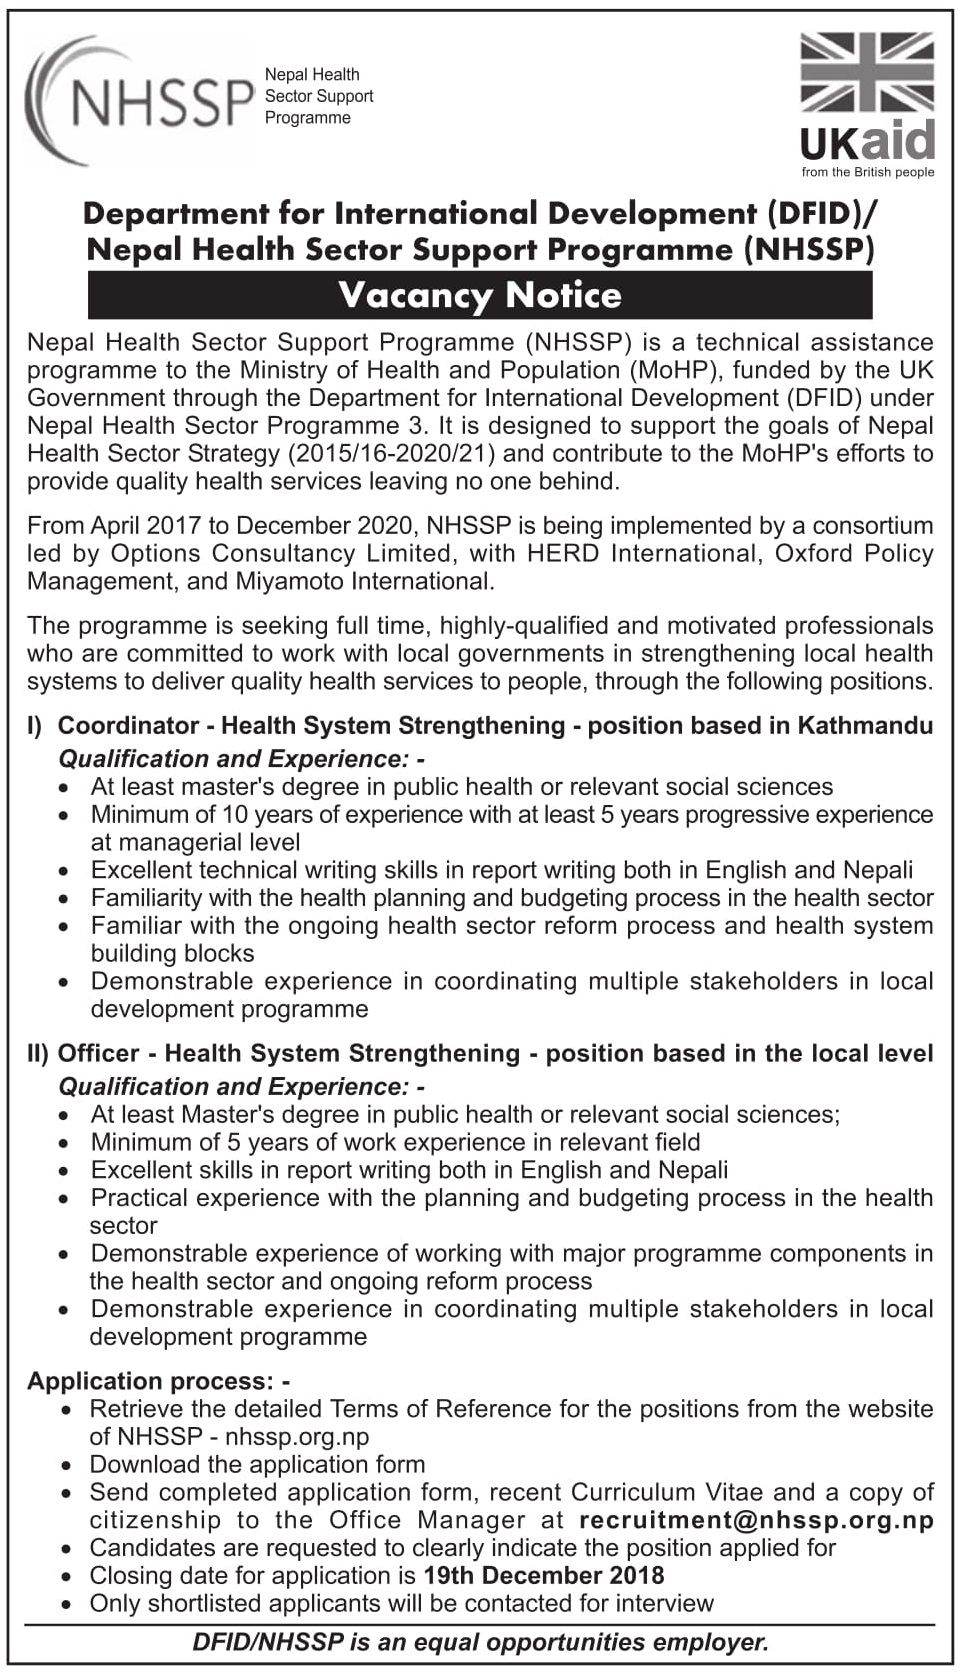 DFID and NHSSP Job Vacancy Notice